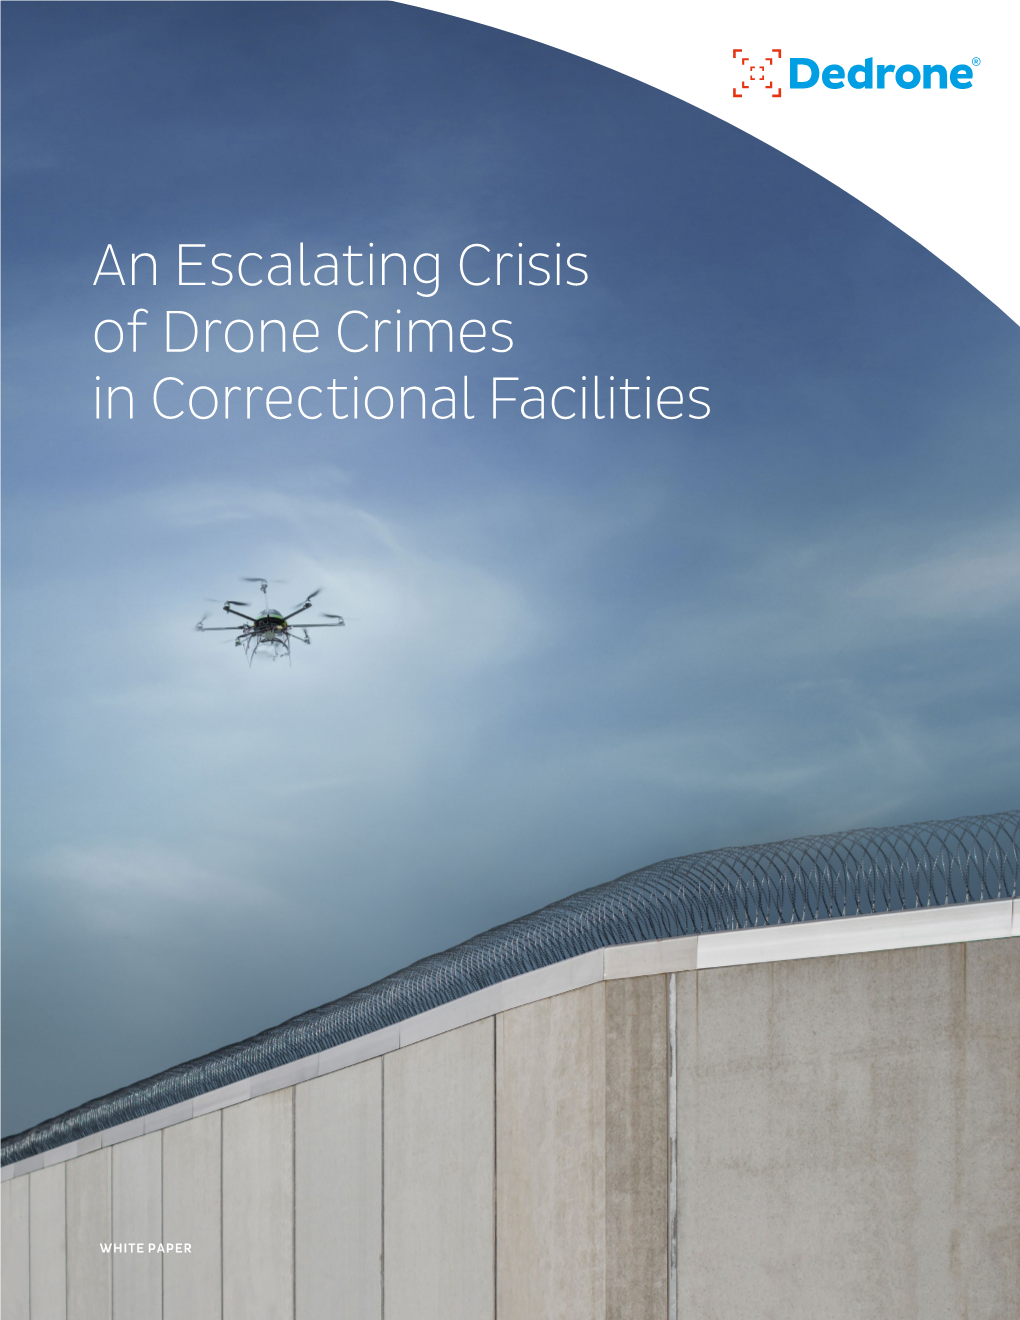 An Escalating Crisis of Drone Crimes in Correctional Facilities